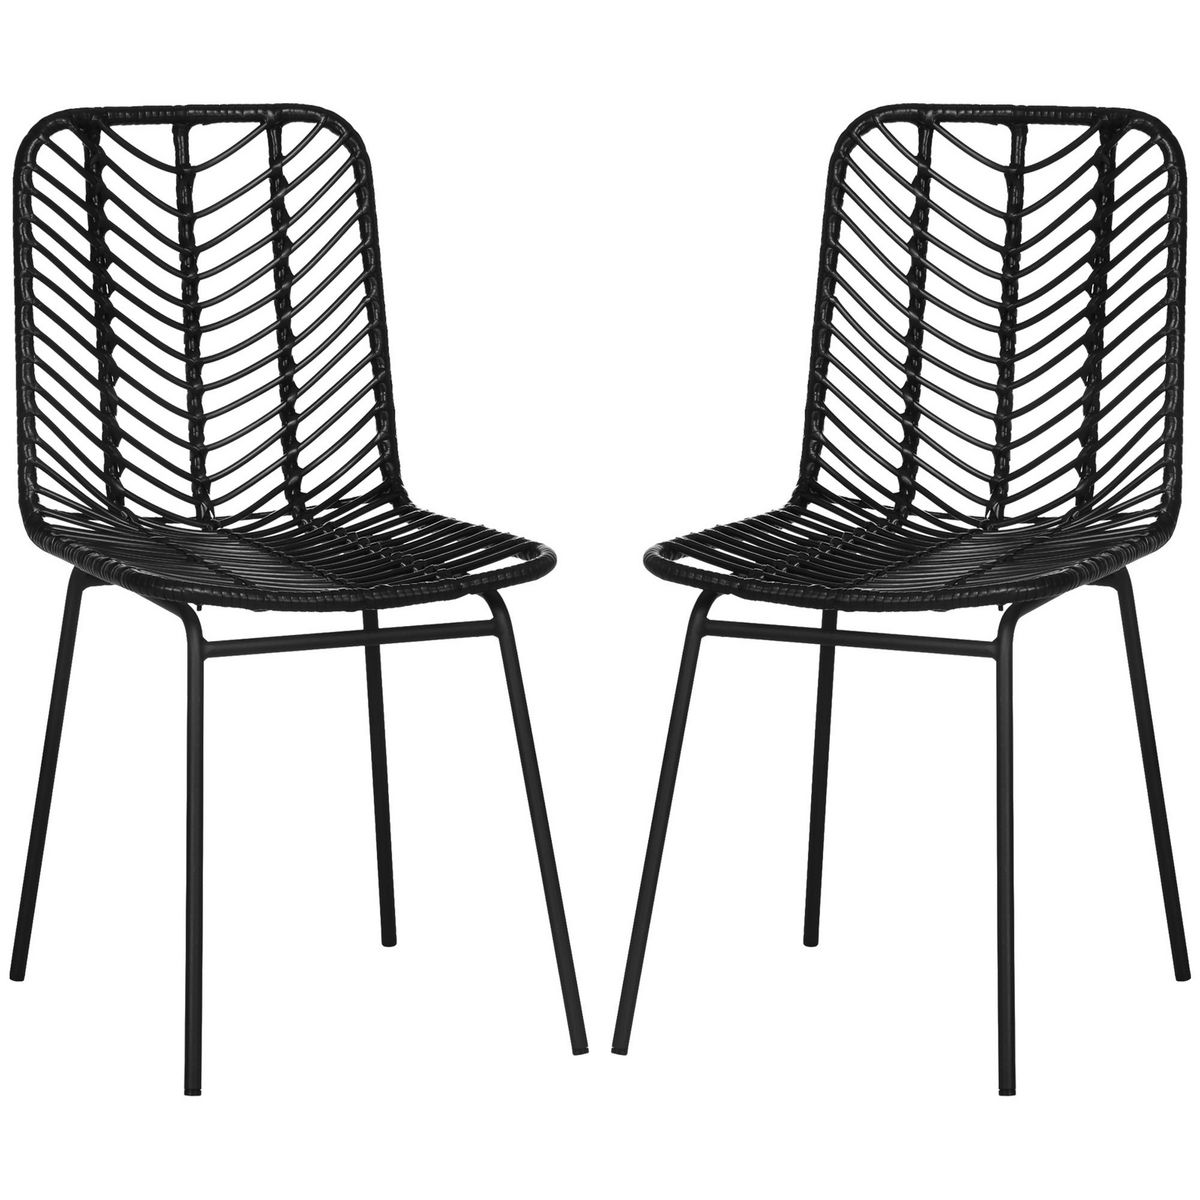 HOMCOM Lot de 2 chaises de jardin style colonial piètement acier résine tressée aspect rotin noir